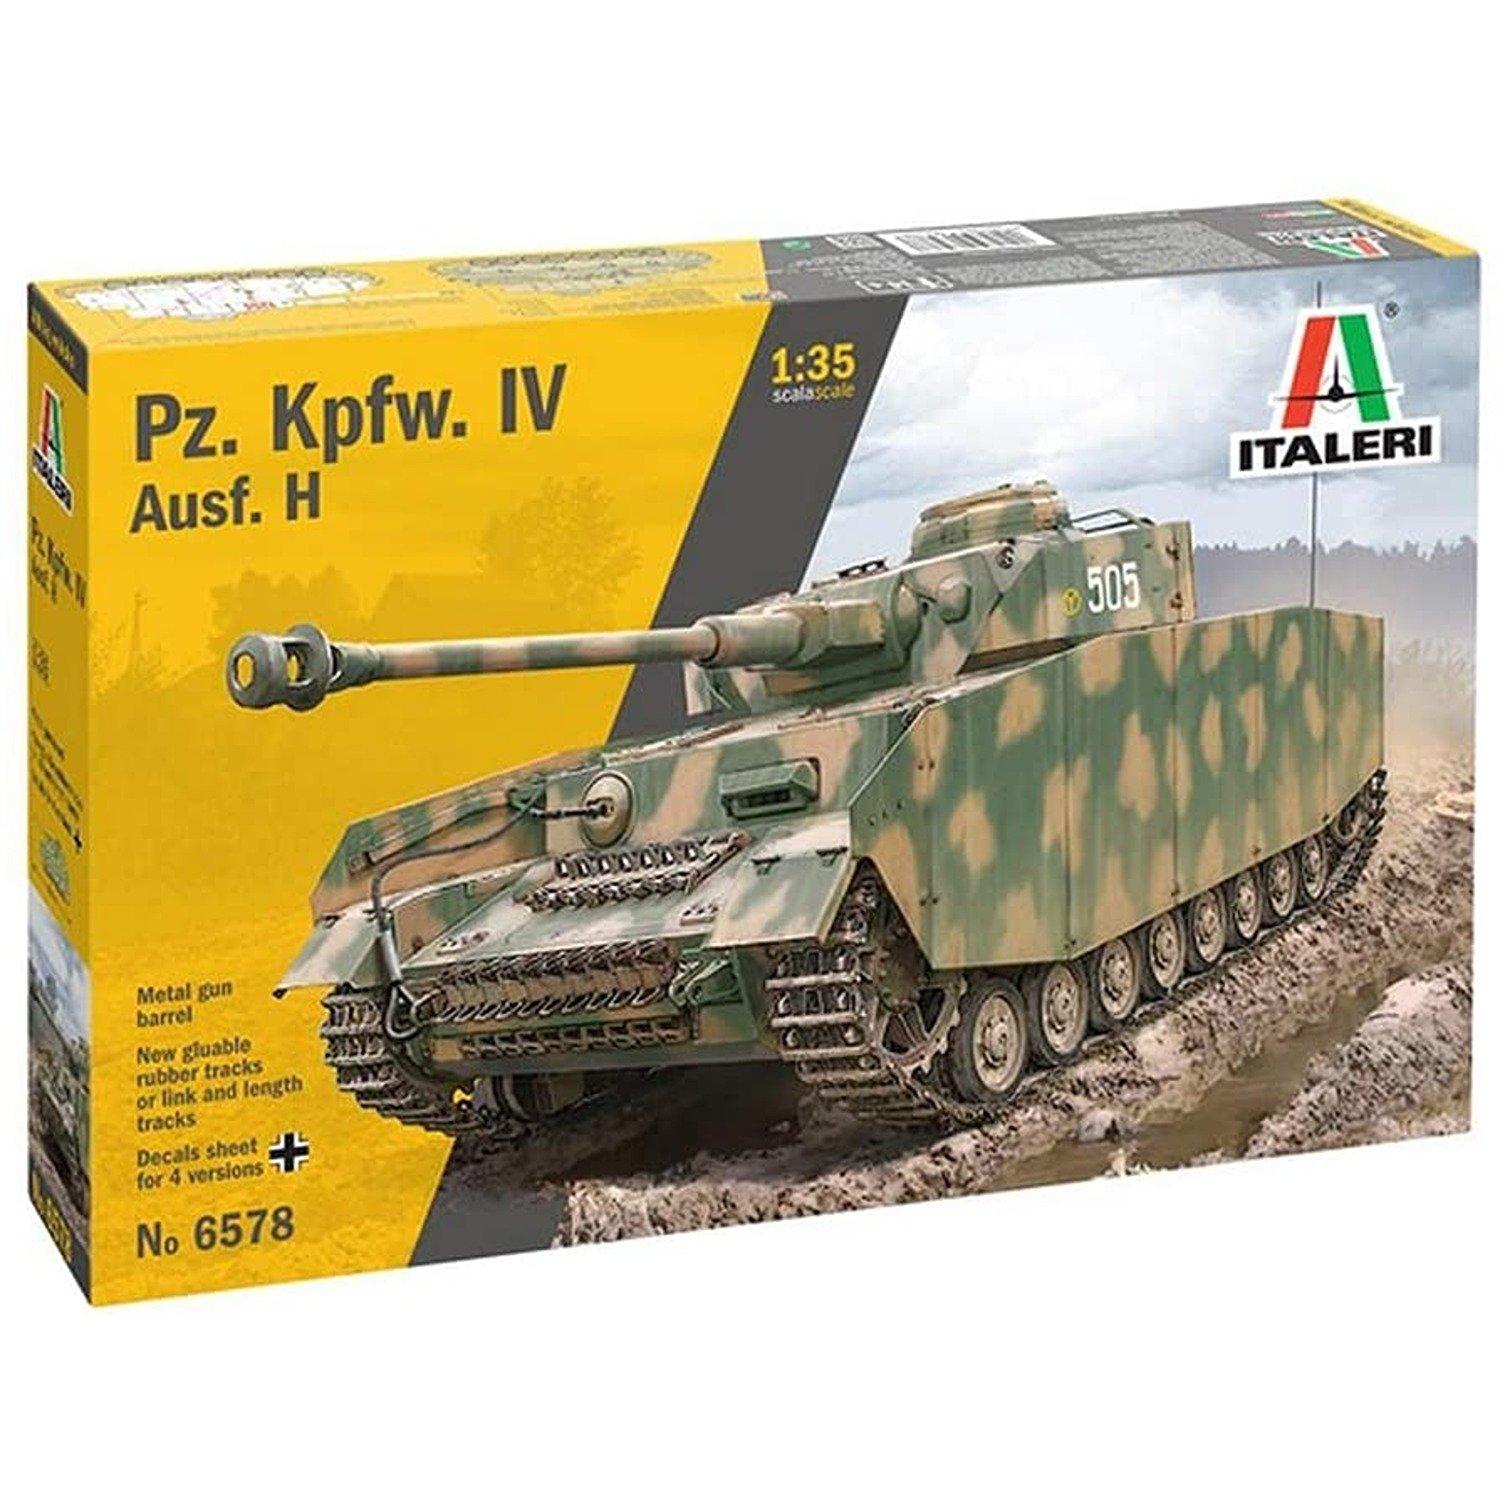 6578 Pz.Kpfw.IV Ausf H 1:35 Model Kit